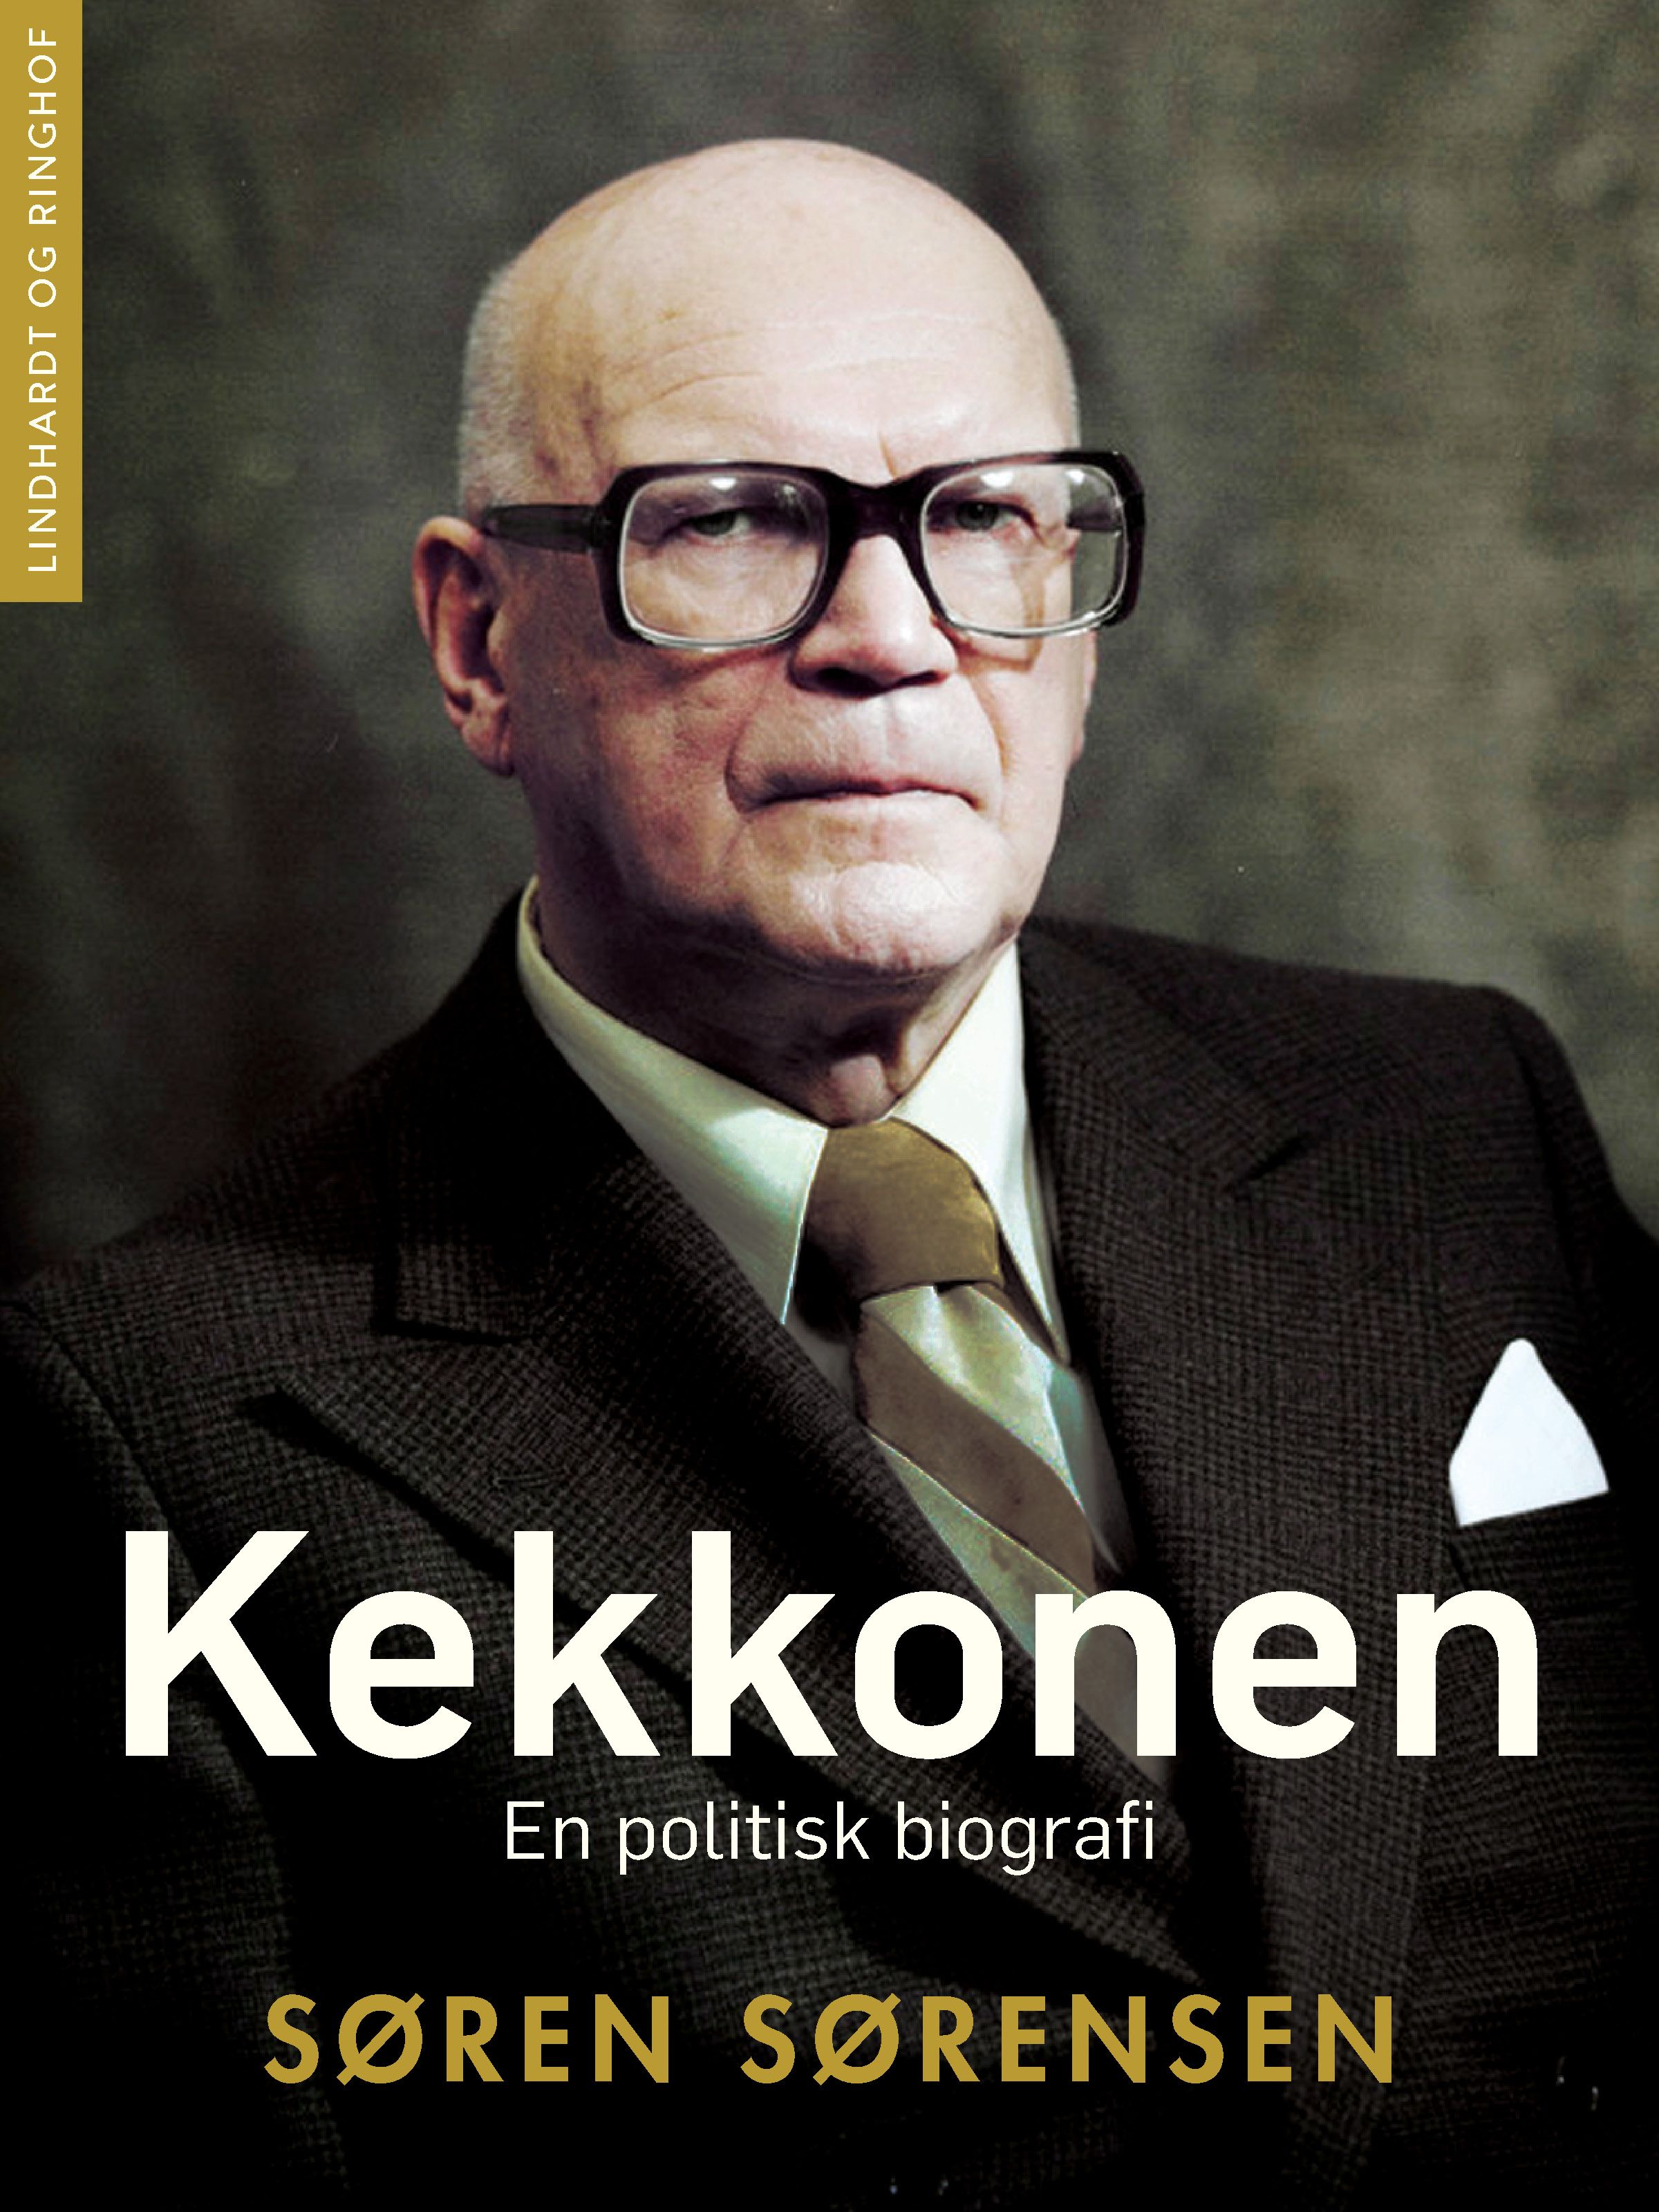 Kekkonen. En politisk biografi, e-bog af Søren Sørensen